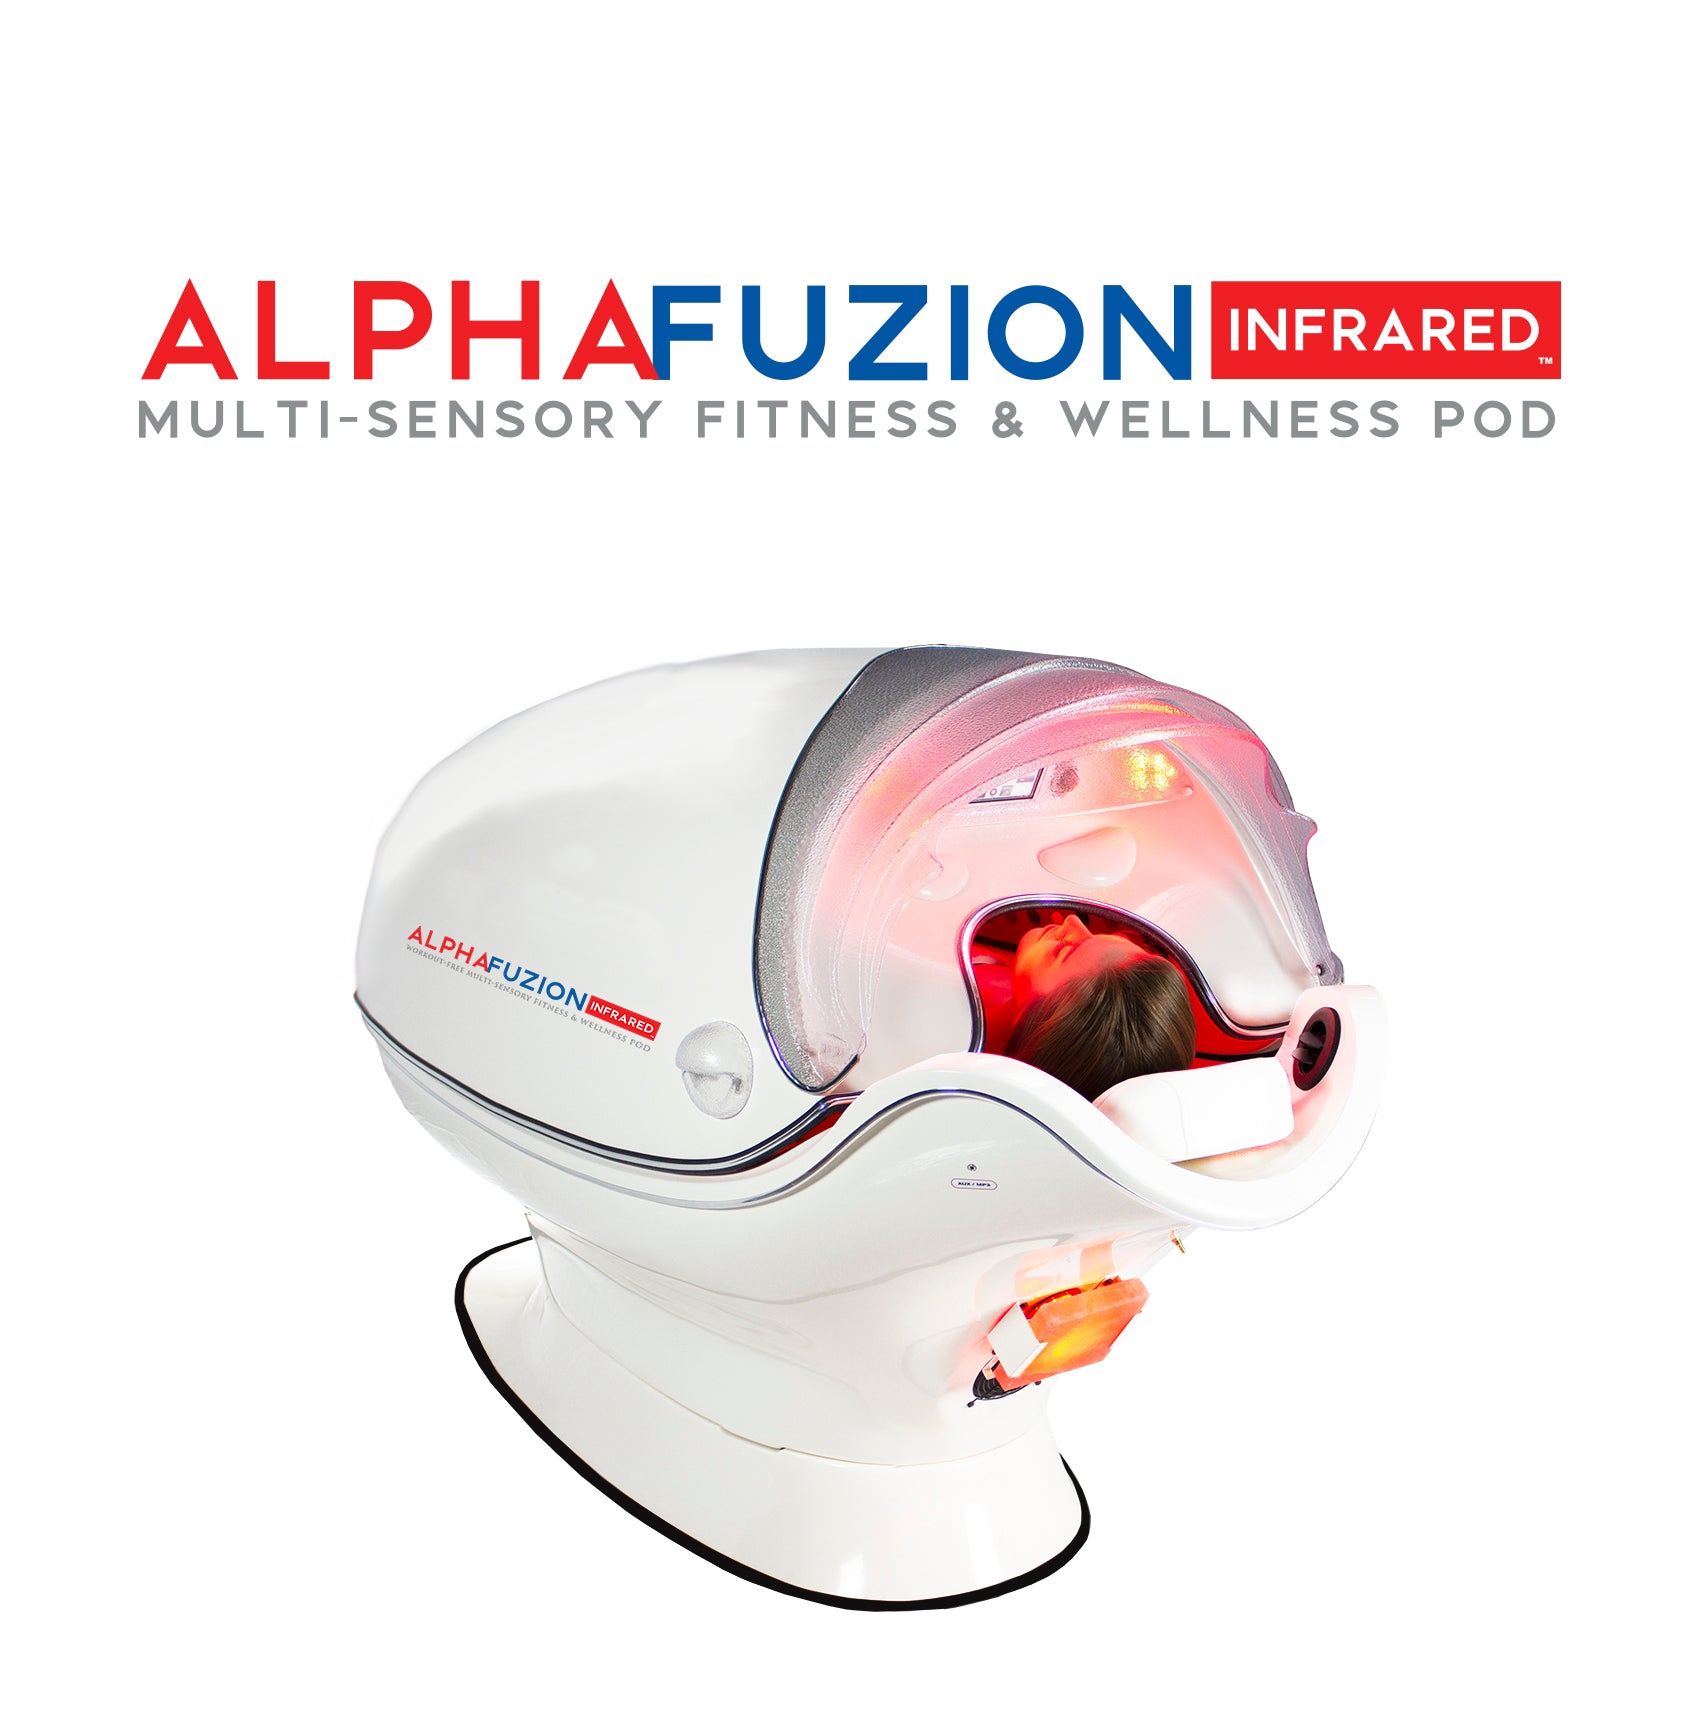 AlphaFuzion Infrared™